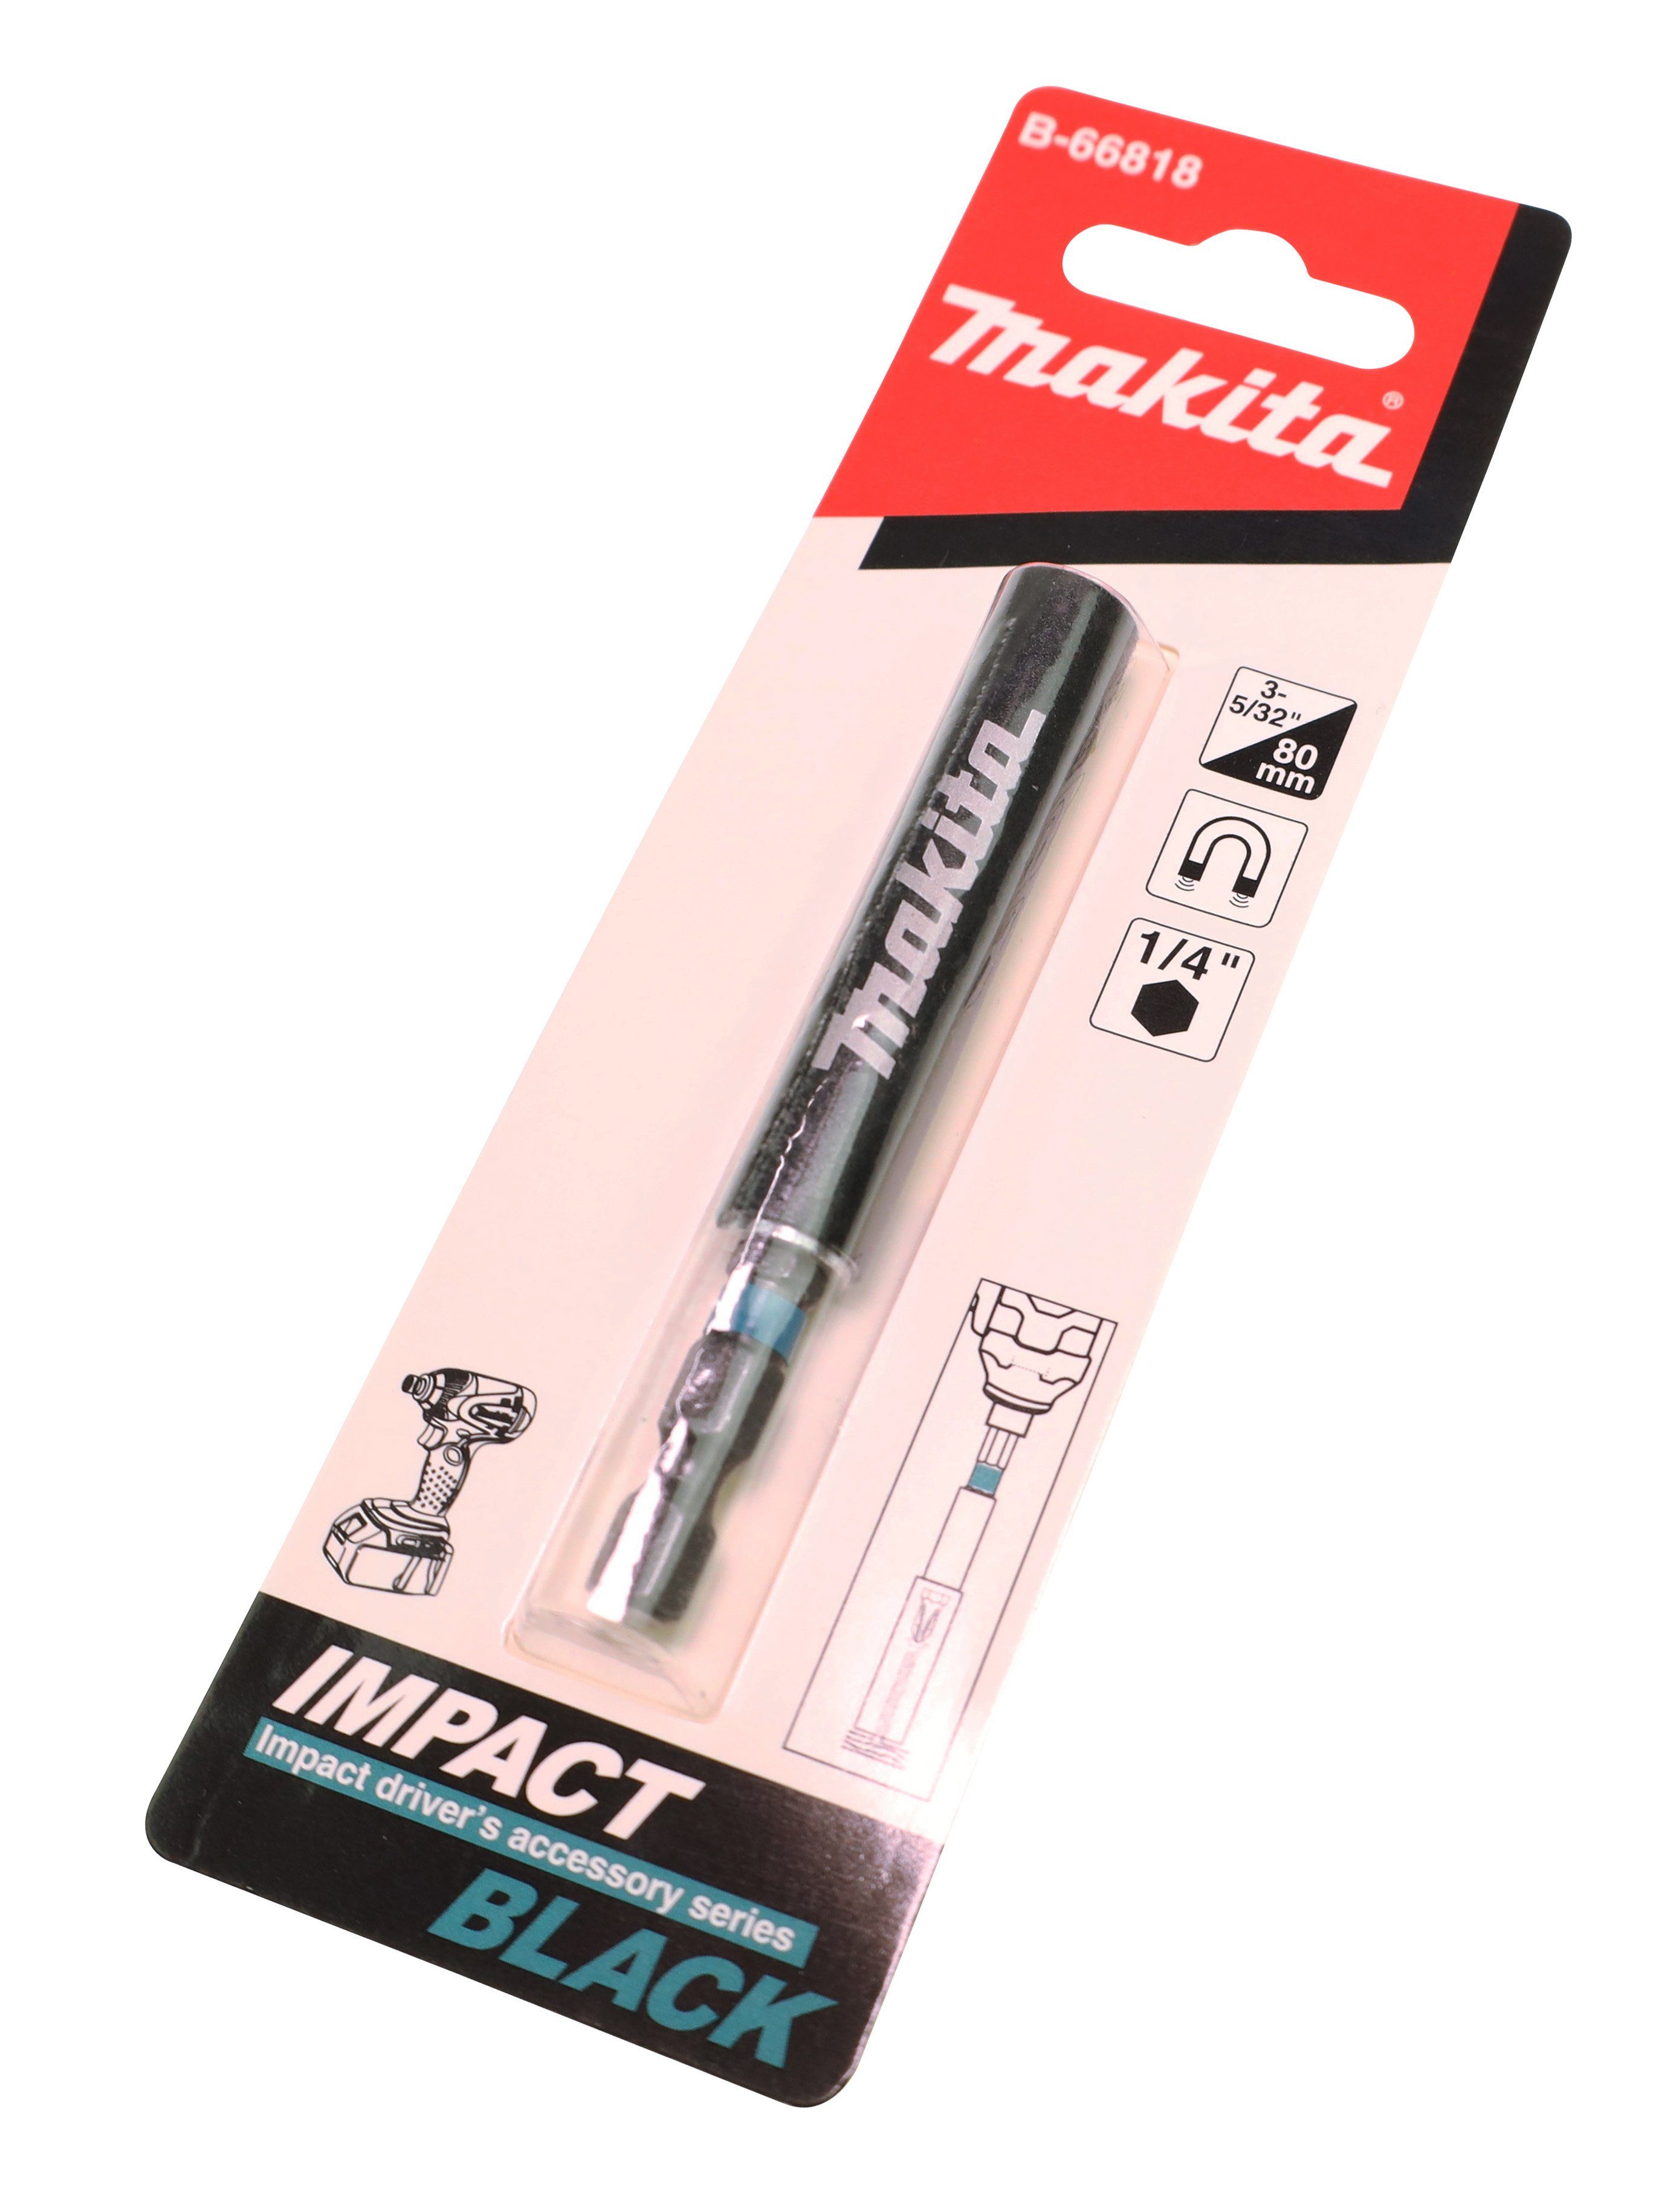 Schraubführungshülse Makita 1/4" mm und B-66818 Bit-Set für 80 Bohrer- Elektrowerkzeuge Makita